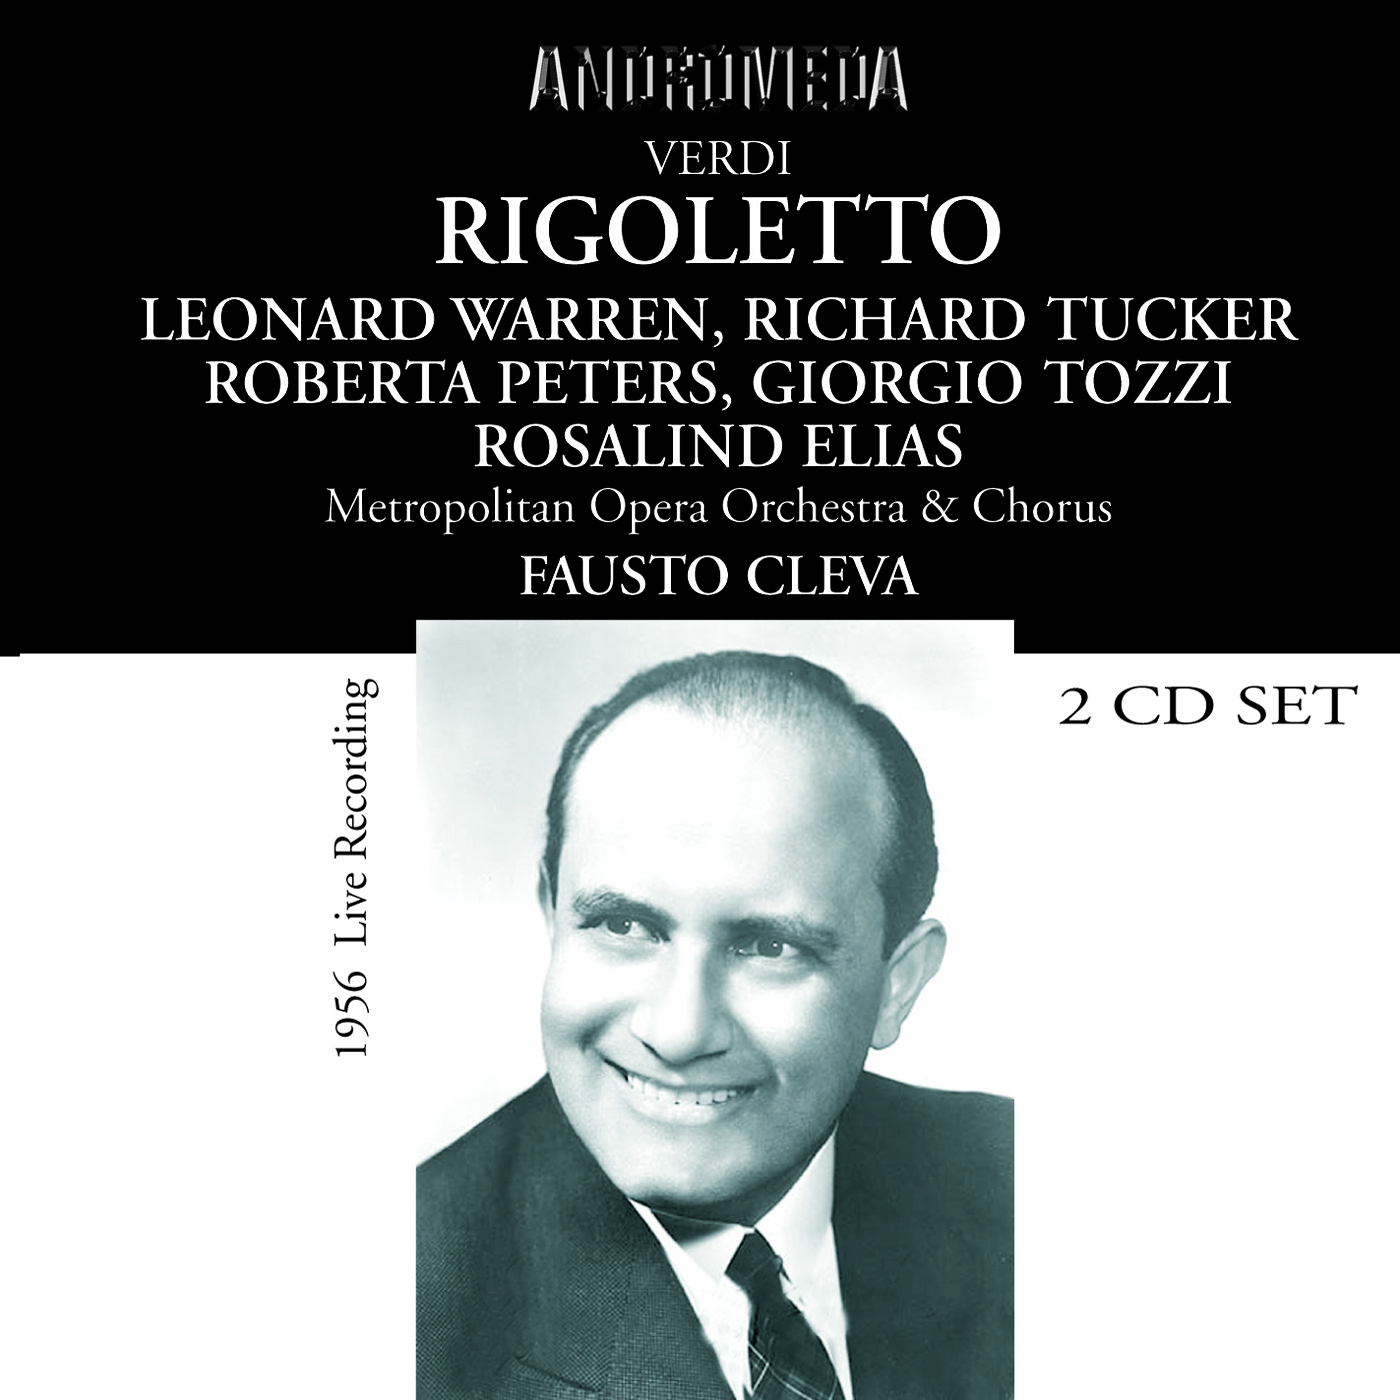 Rigoletto*: Act I: Della mia bella incognita borghese (Duke, Borsa)